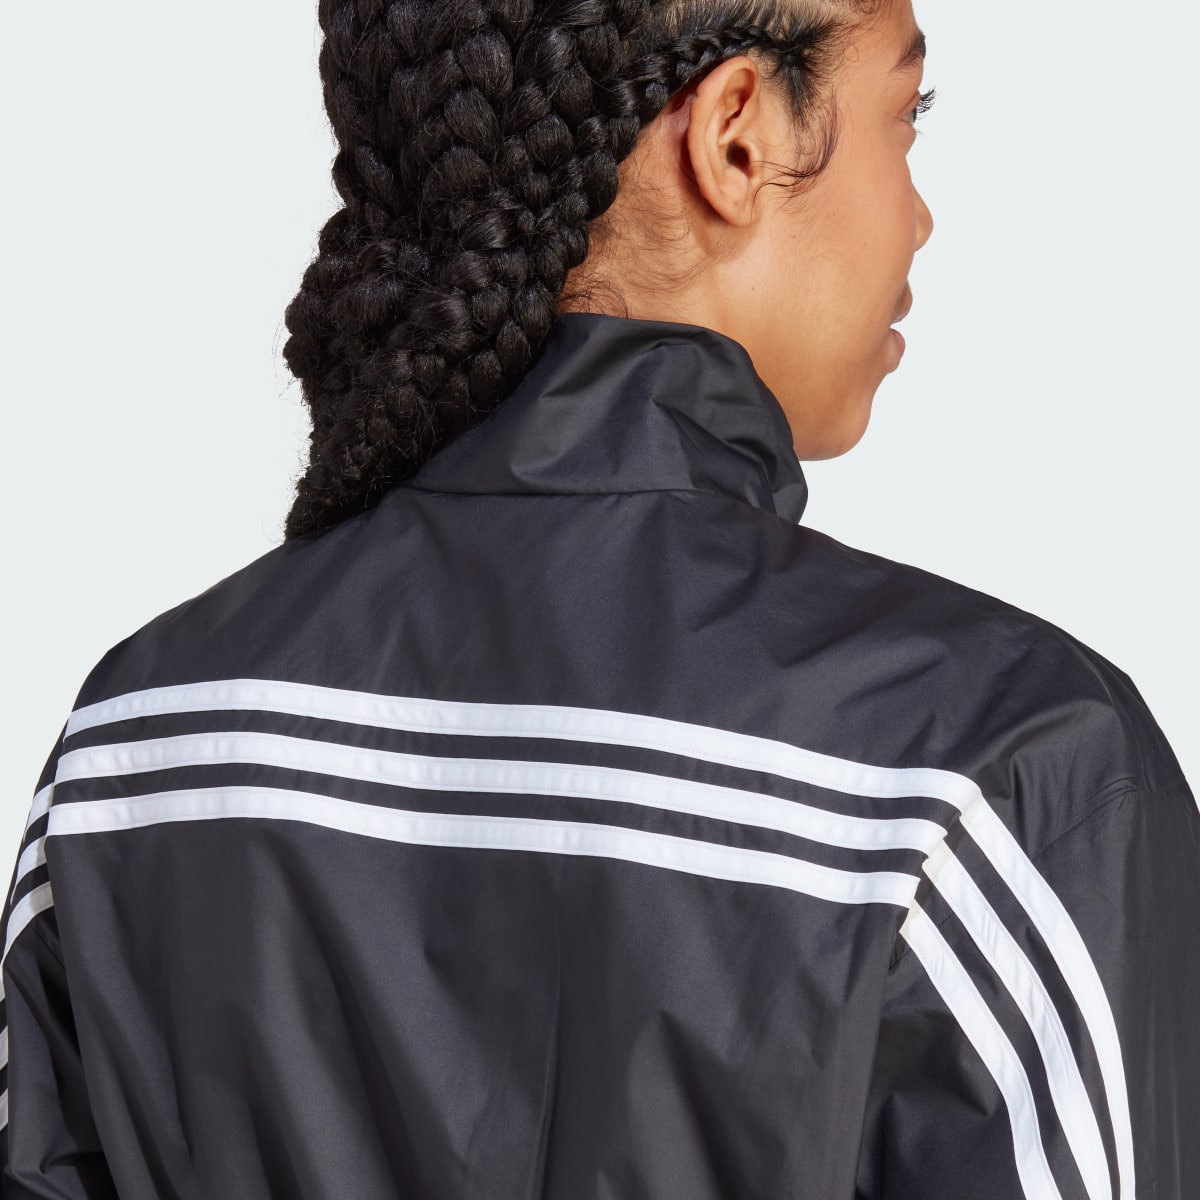 Adidas Future Icons 3-Stripes Woven 1/4 Zip Jacket. 7